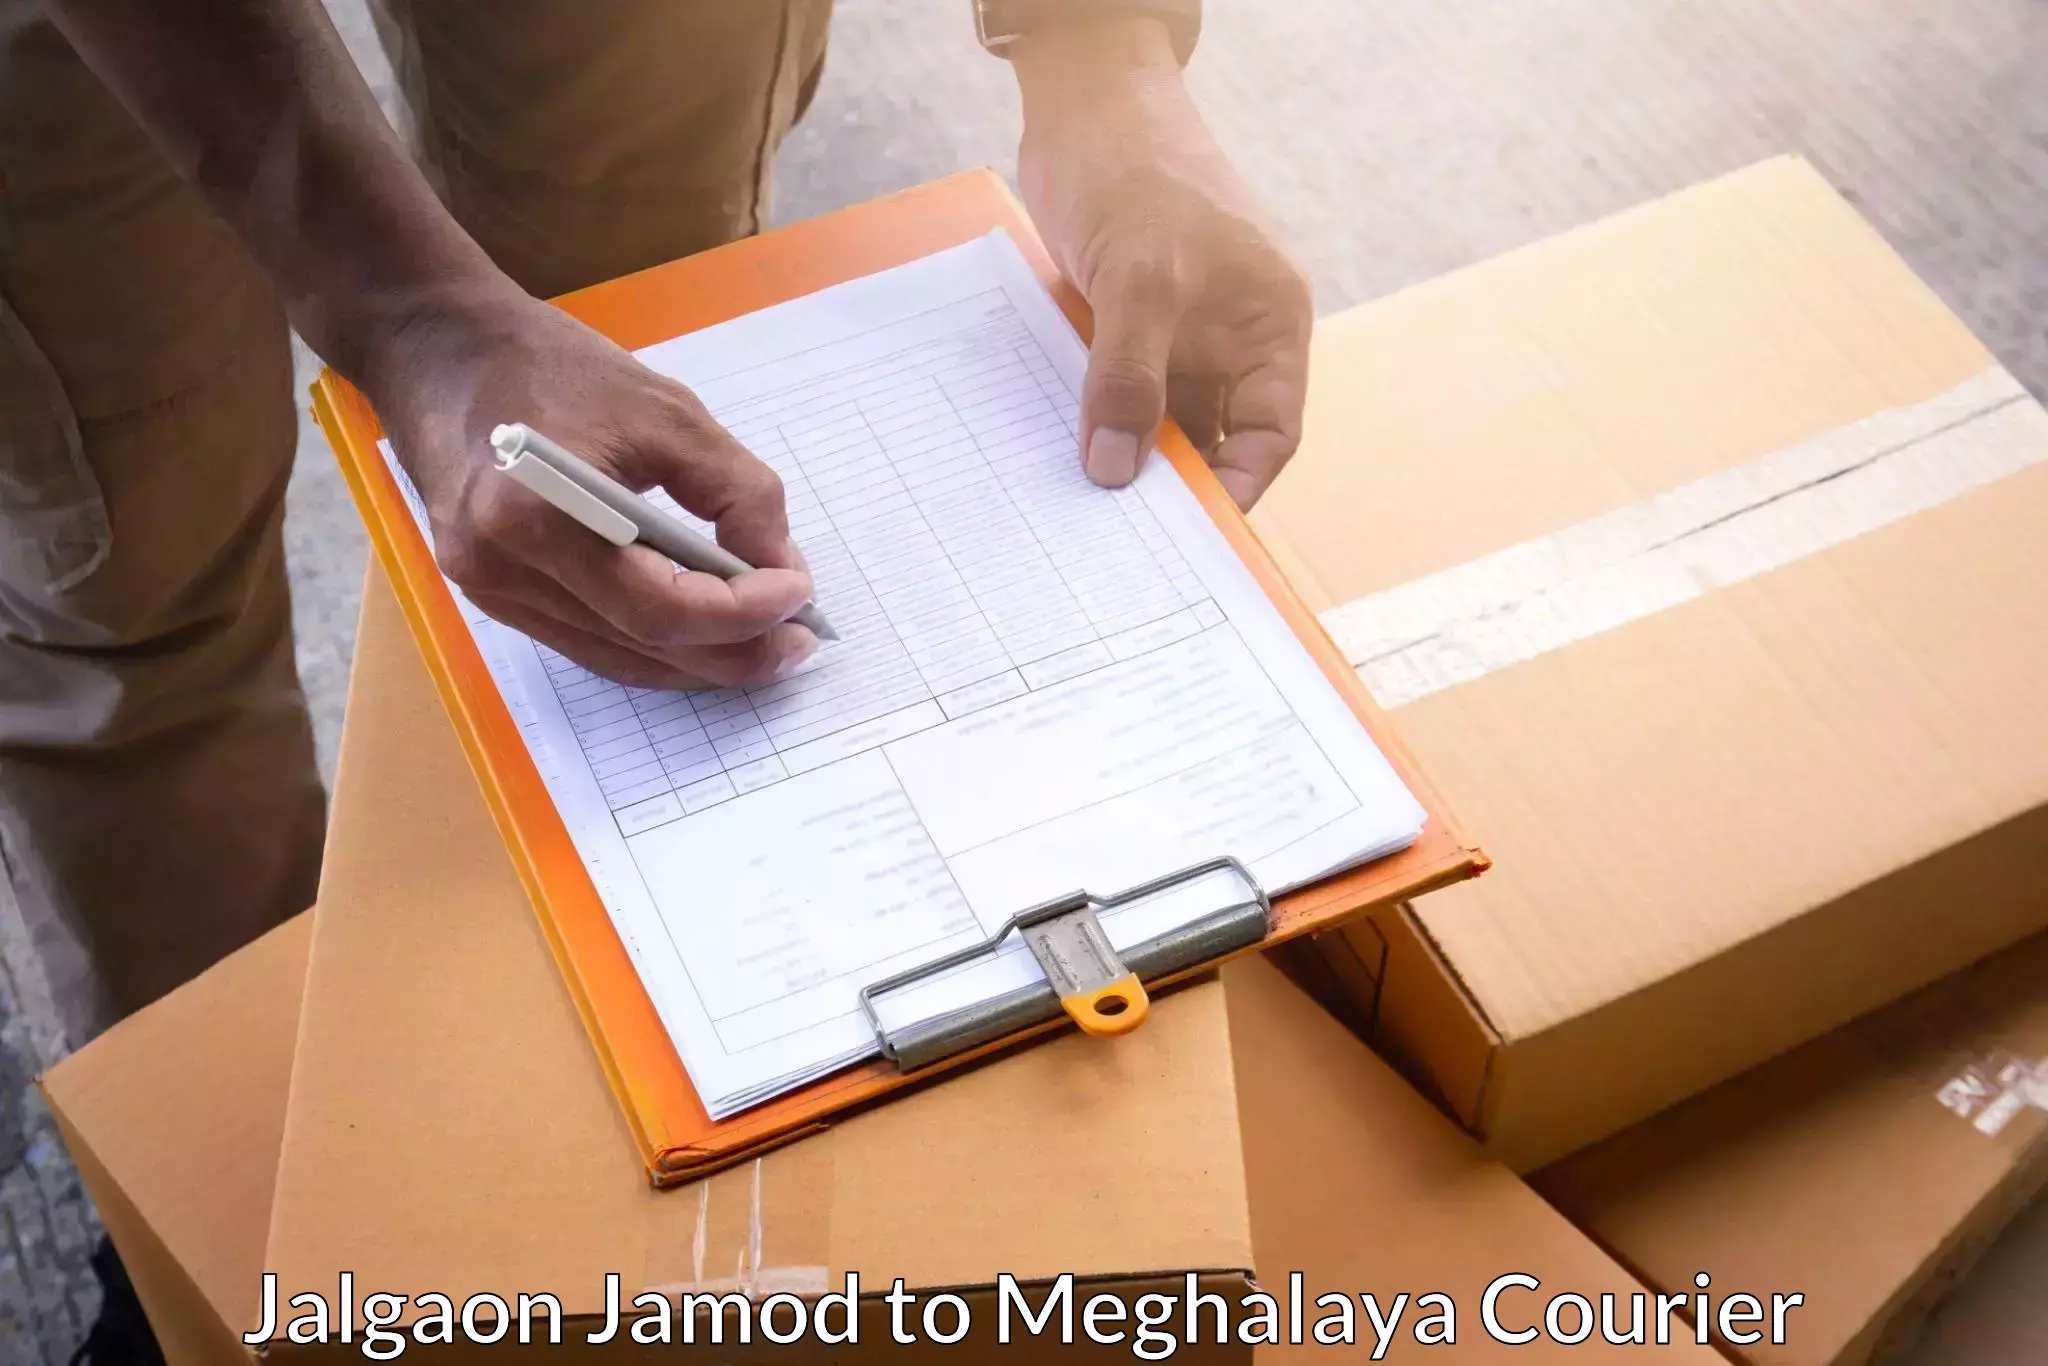 International courier rates Jalgaon Jamod to NIT Meghalaya